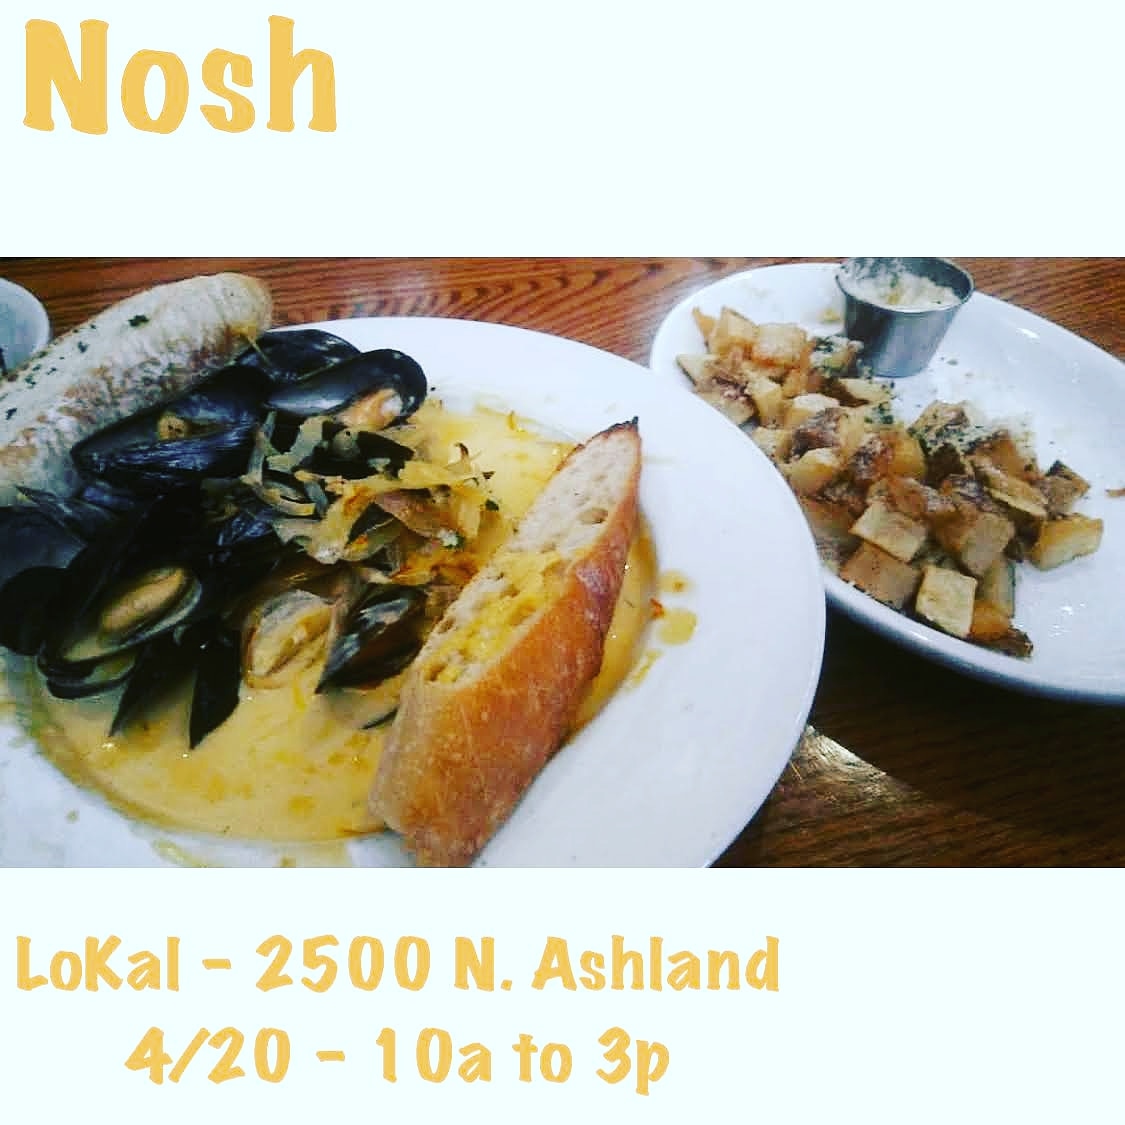 Saturday Day 4/20: Nosh @ Lokal